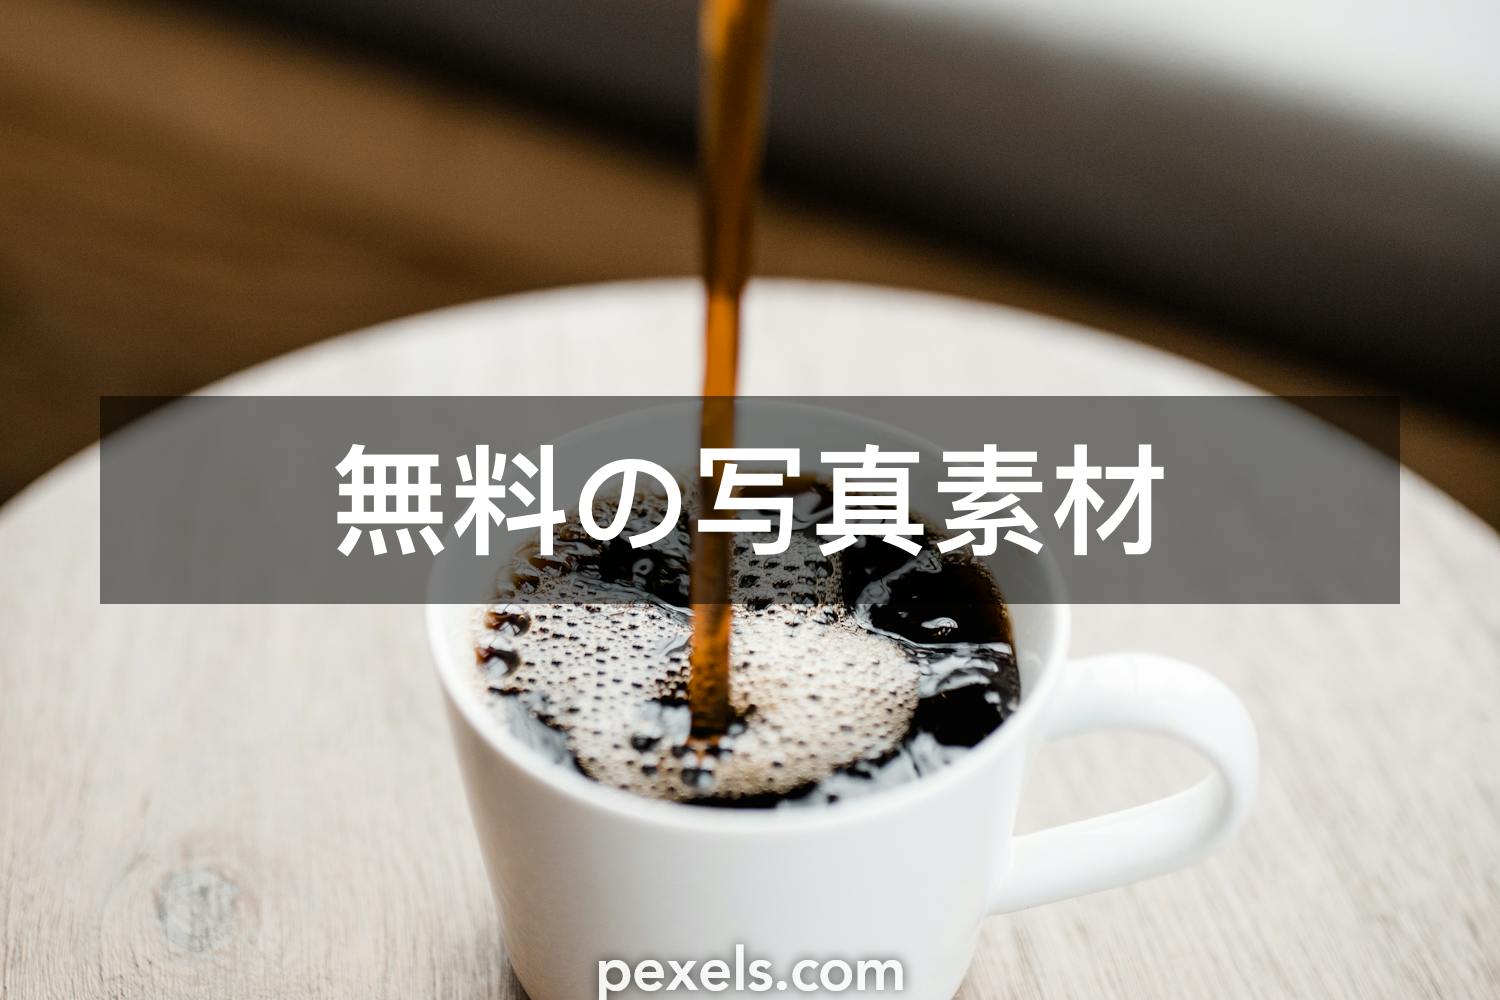 10 ドリップコーヒーと一致する写真 Pexels 無料の写真素材